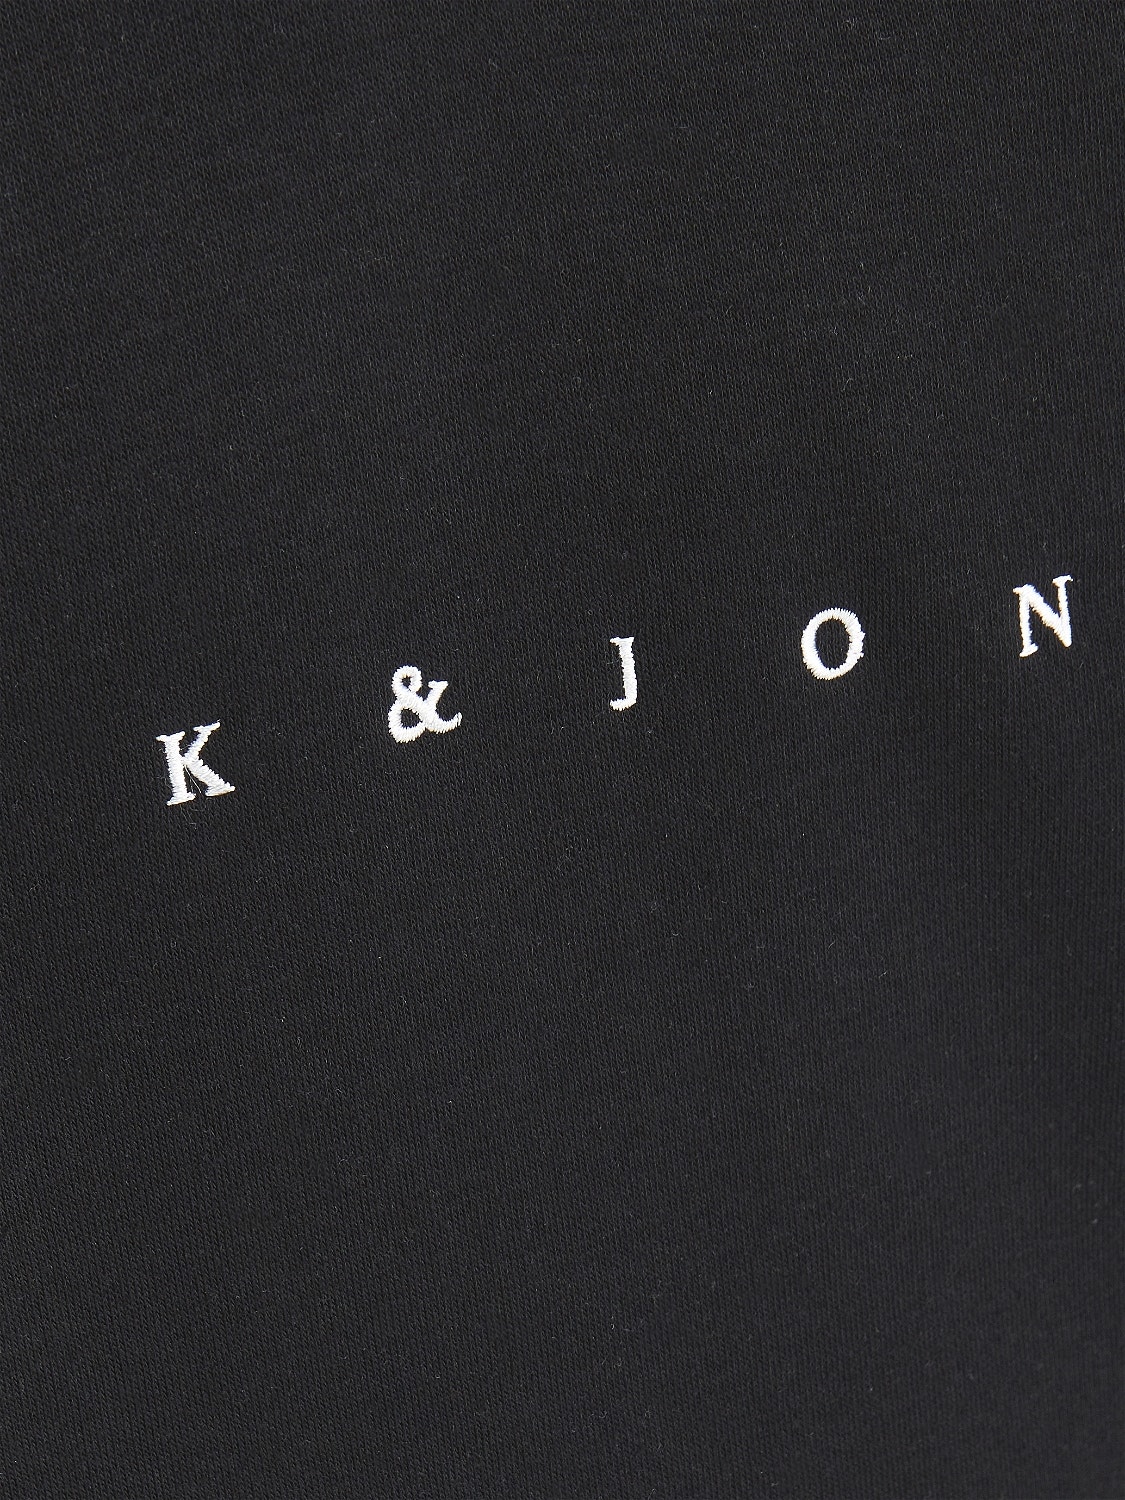 Jack & Jones Logo Hoodie For boys -Black - 12214983